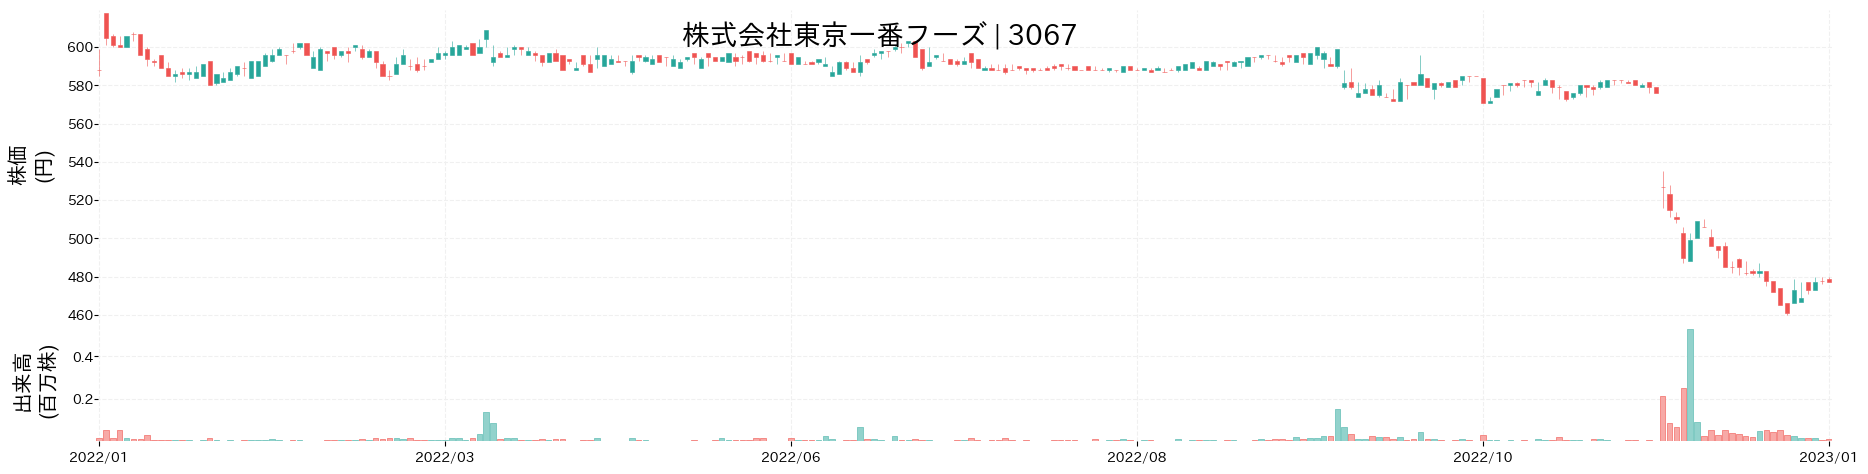 東京一番フーズの株価推移(2022)